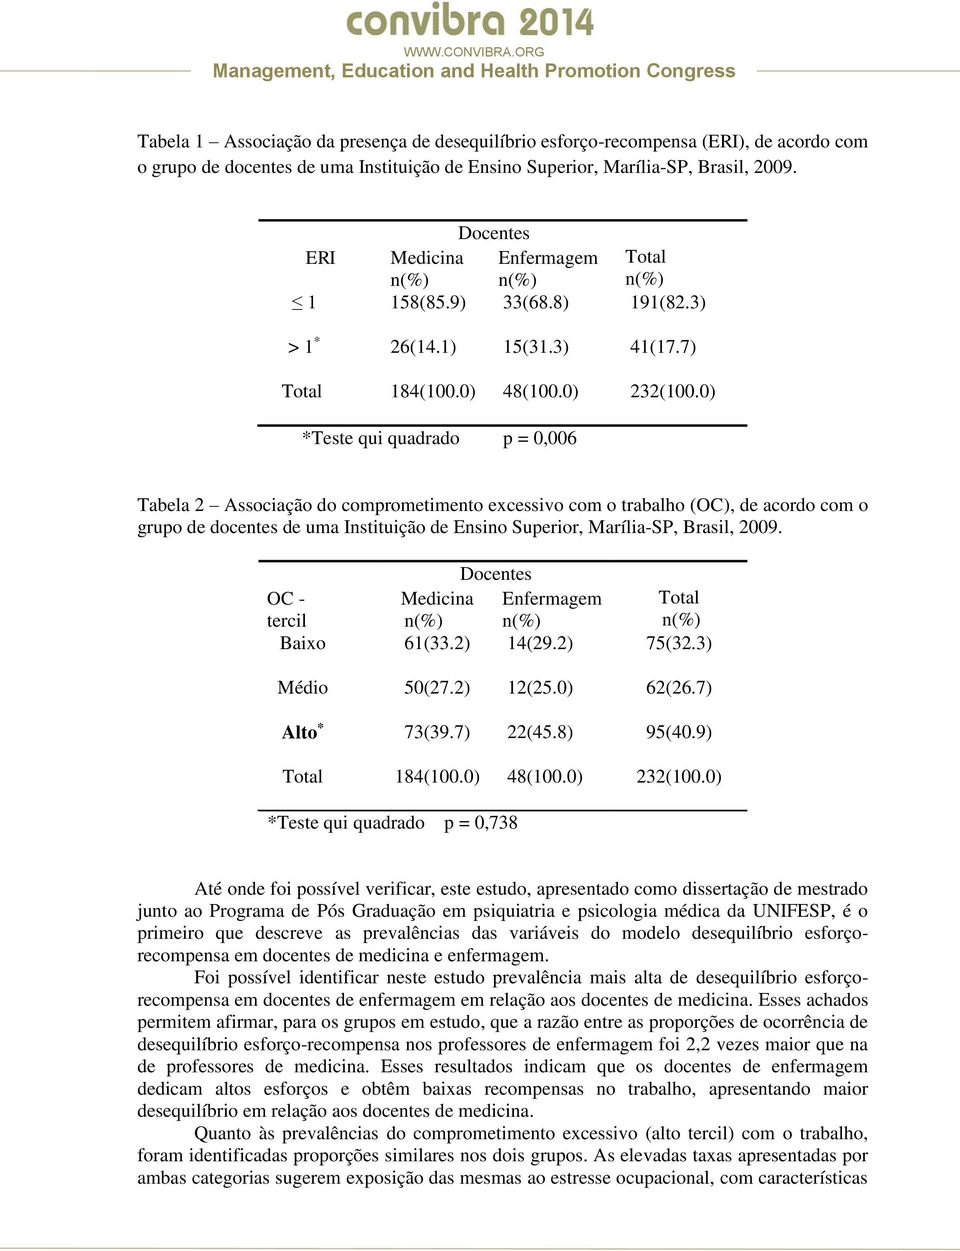 trabalho (OC), de acordo com o grupo de docentes de uma Instituição de Ensino Superior, Marília-SP, Brasil, 2009 Docentes OC - tercil Medicina Enfermagem Total Baixo 61(332) 14(292) 75(323) Médio